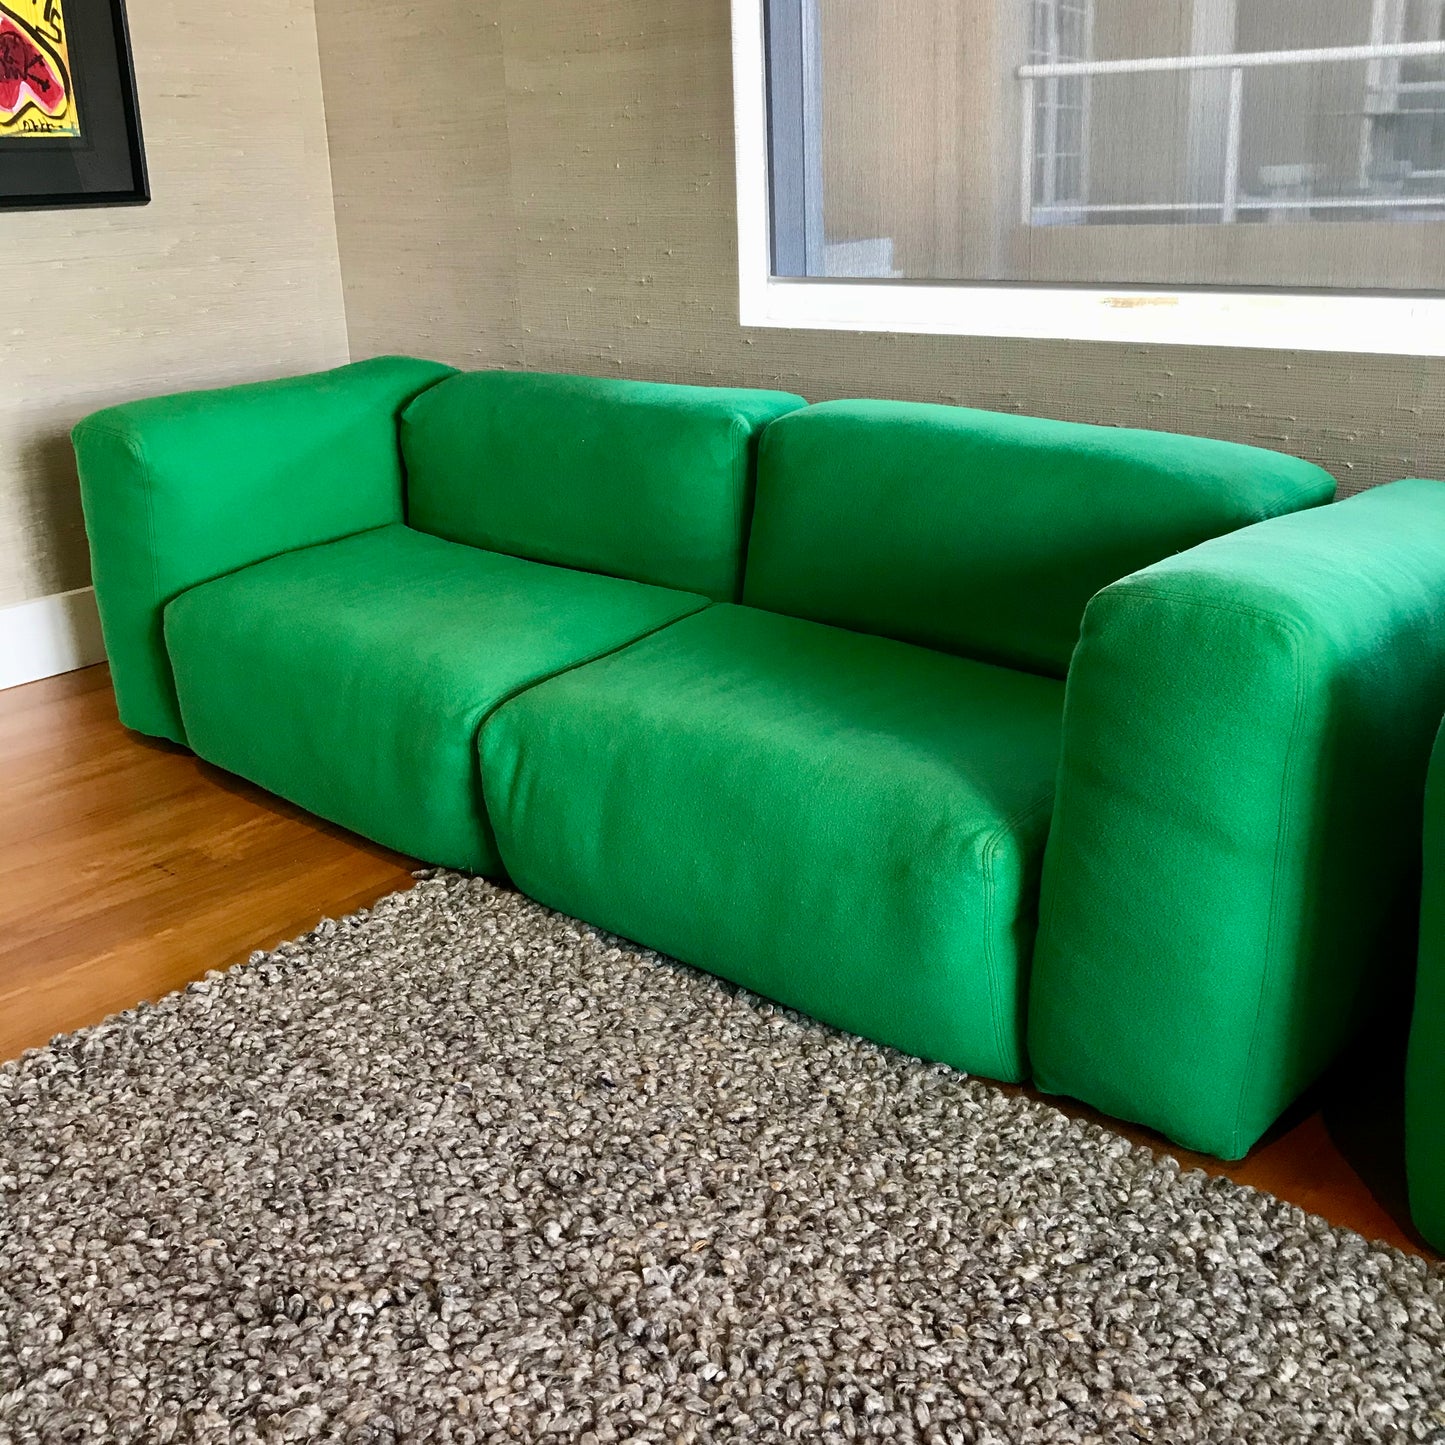 Superoblong Sofa by Jasper Morrison for Capellini